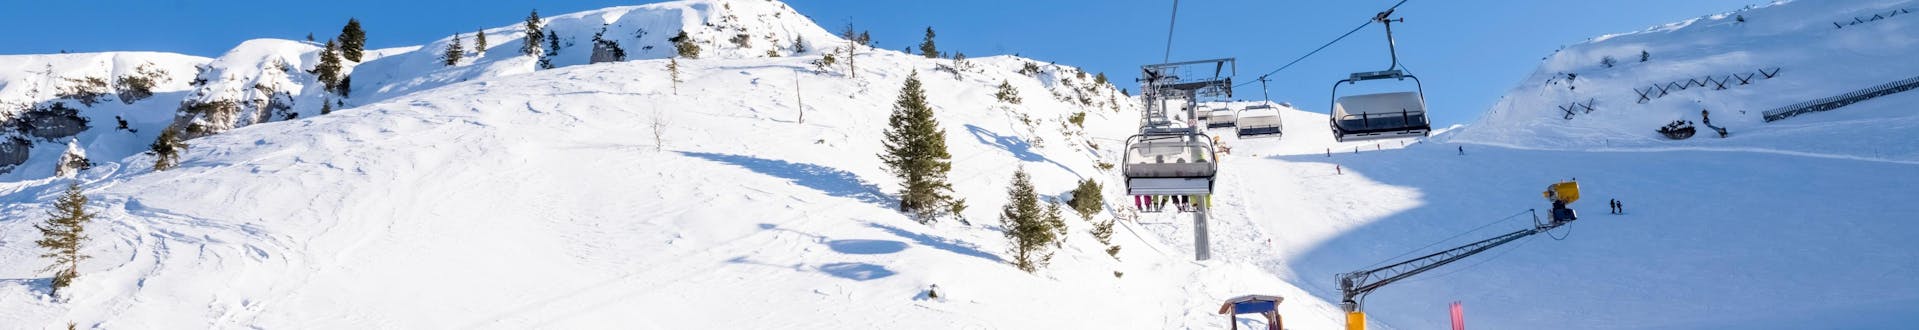 Zonnige dag op de pistes met mensen die naar beneden skiën en met de skilift naar boven gaan.